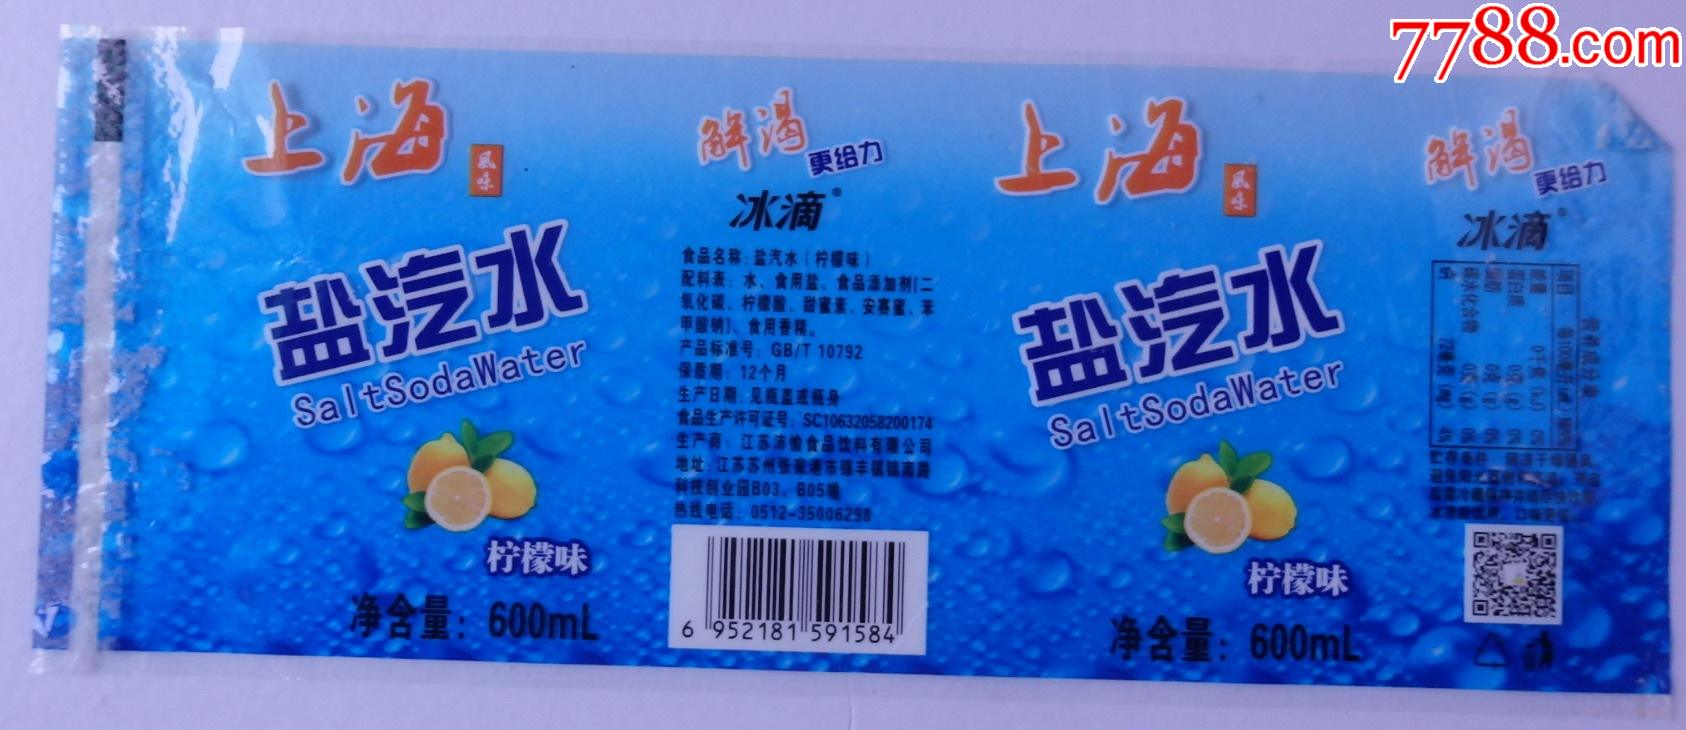 上海风味盐汽水柠檬味600毫升-解渴更给力-冰滴商标1枚